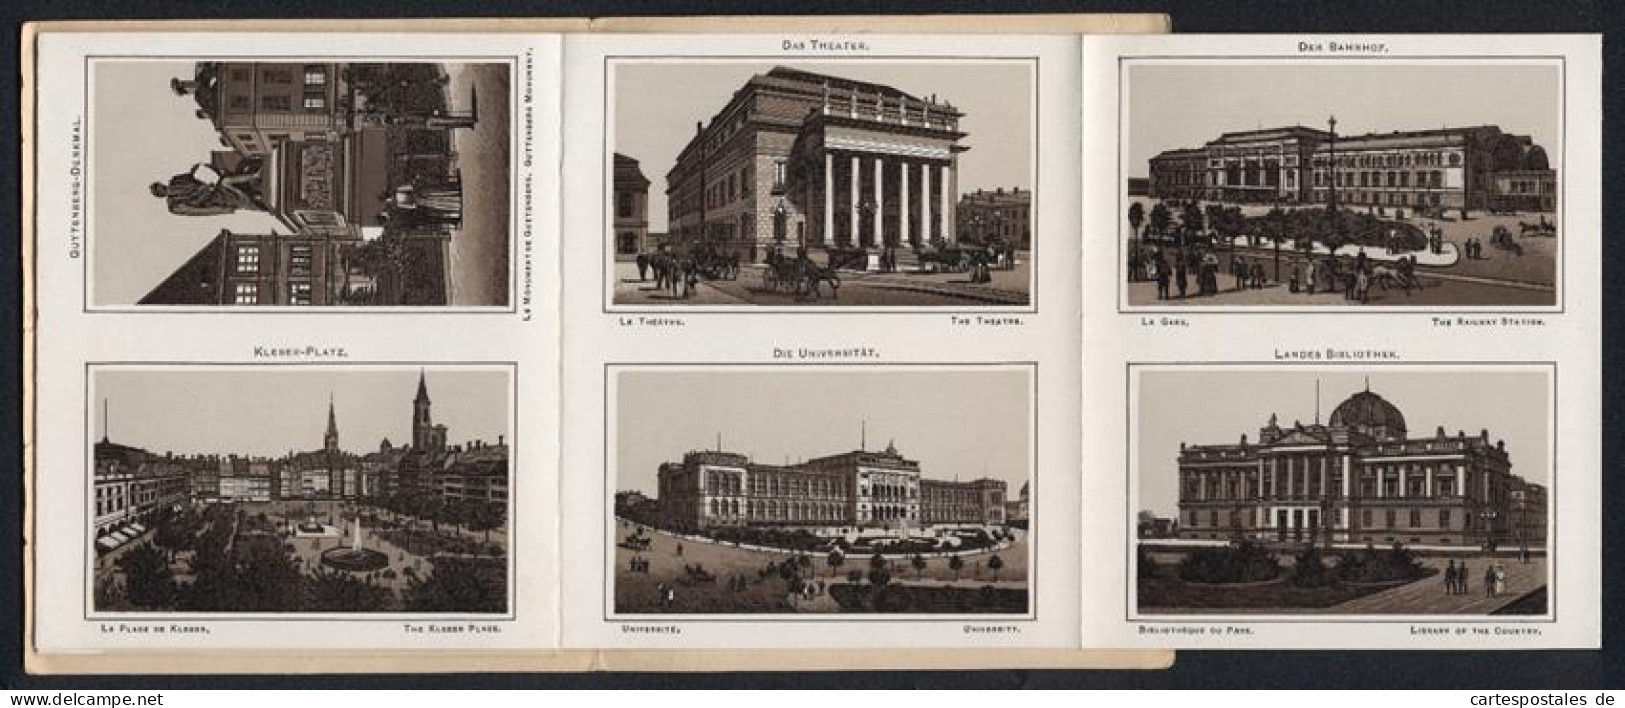 Leporello-Album 24 Lithographie-Ansichten Strassburg I. E., Bahnhof, Landesausschuss-Gebäude, Frauenhaus, Kleber-Platz  - Litografía